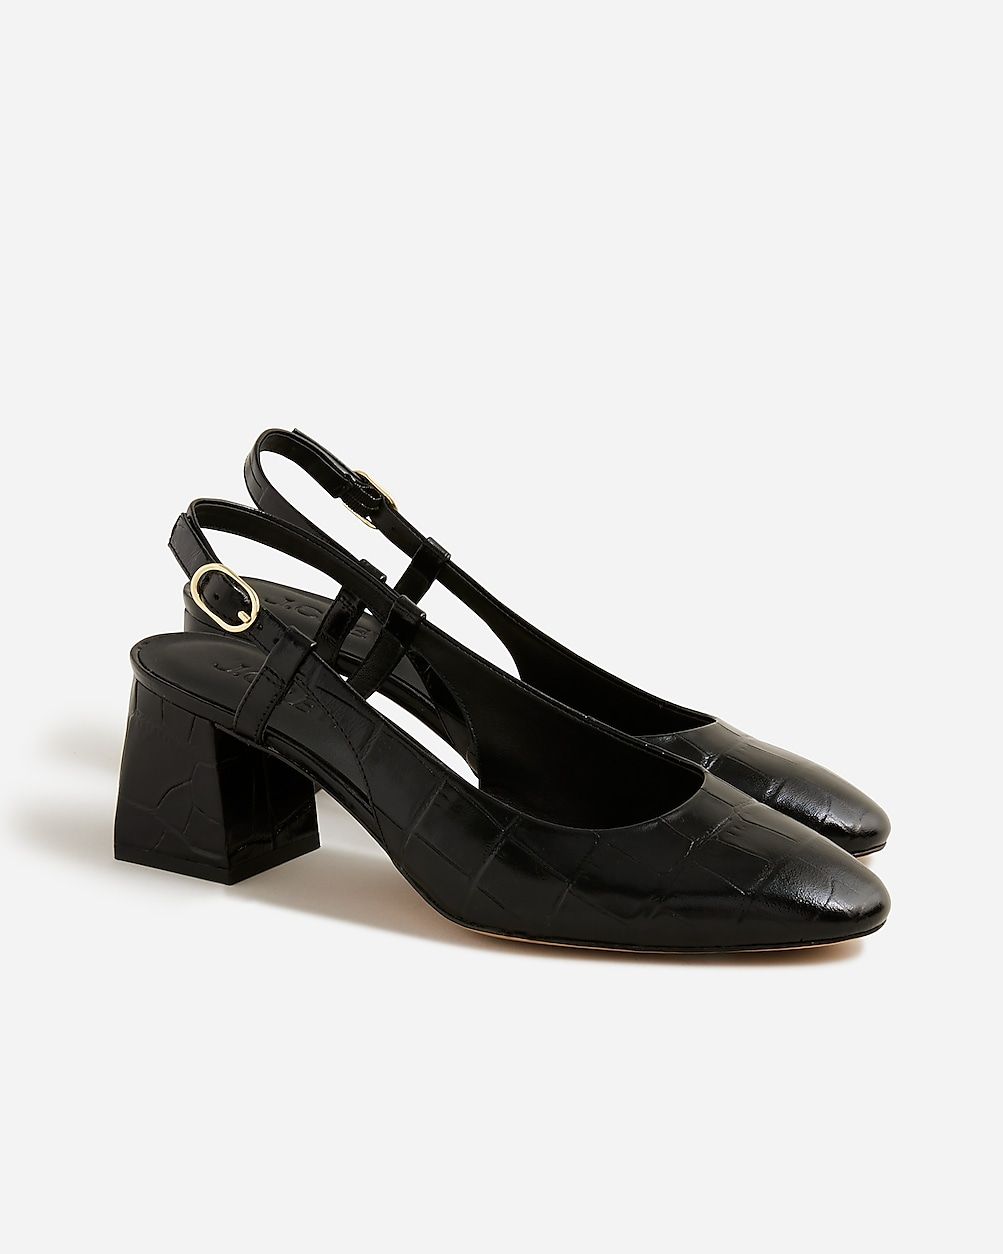 Layne slingback heels in croc-embossed leather | J.Crew US